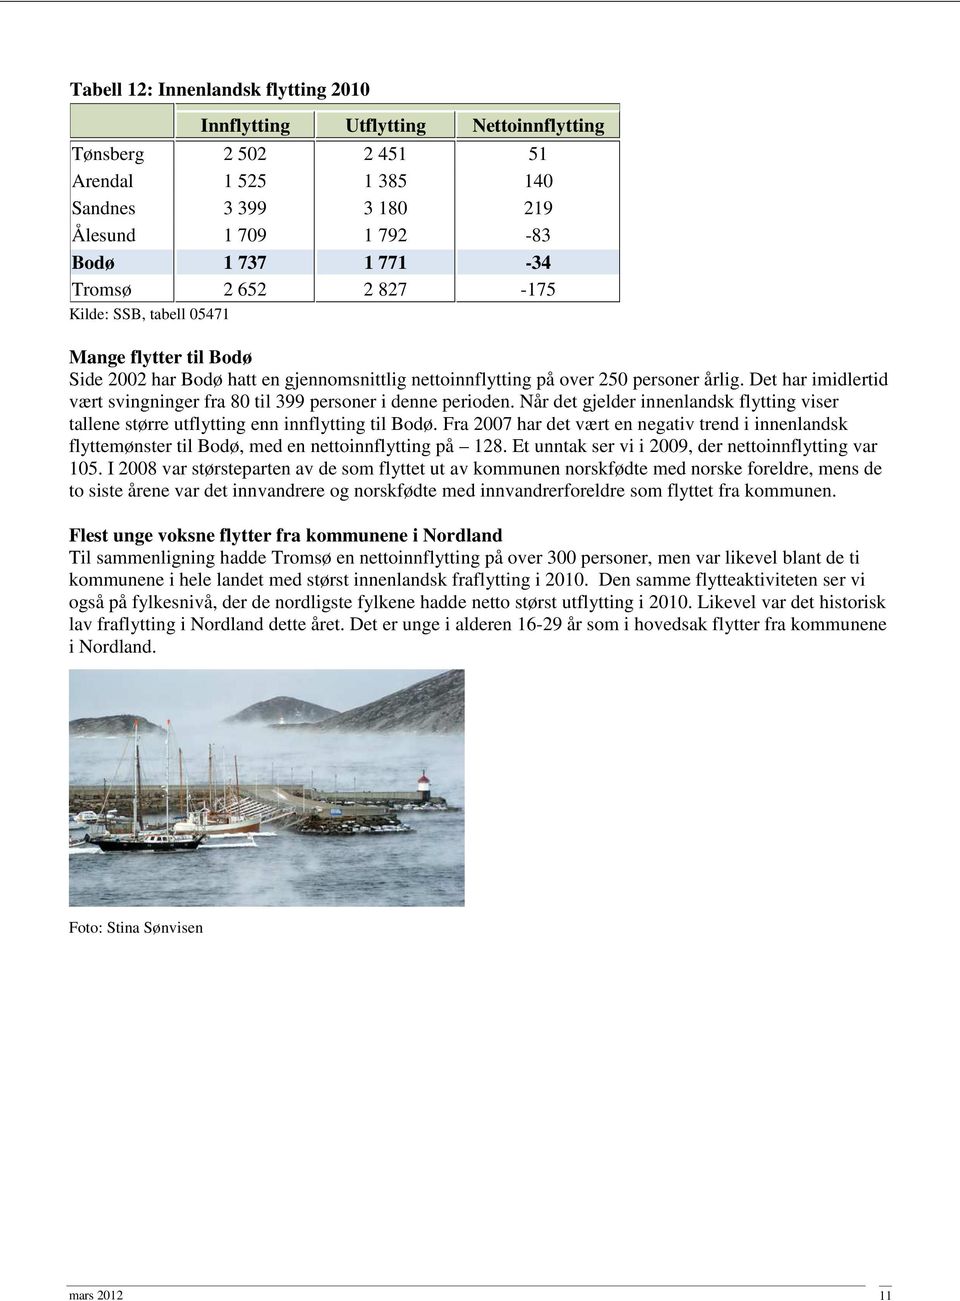 Det har imidlertid vært svingninger fra 80 til 399 personer i denne perioden. Når det gjelder innenlandsk flytting viser tallene større utflytting enn innflytting til Bodø.